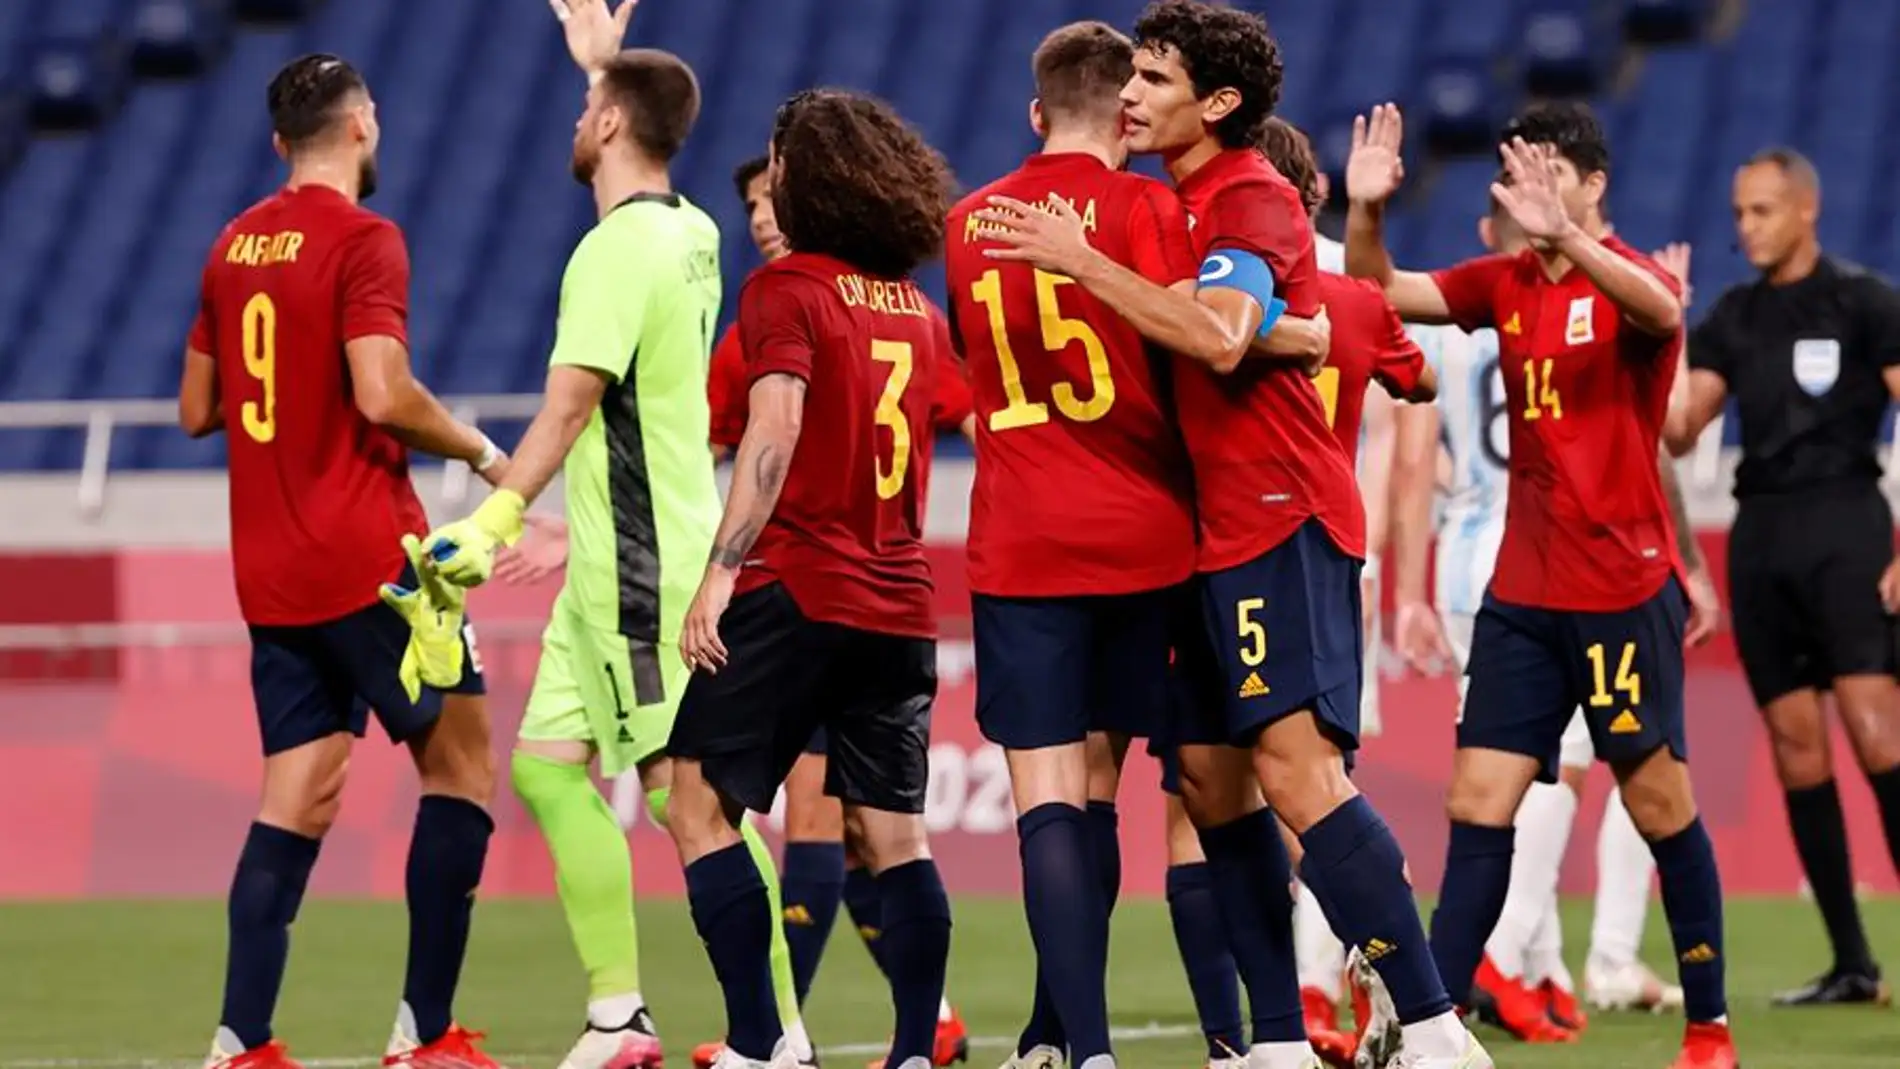 ¿Cuándo juega España las semifinales de fútbol en los Juegos Olímpicos y cuál es el rival? Fecha y horario del partido